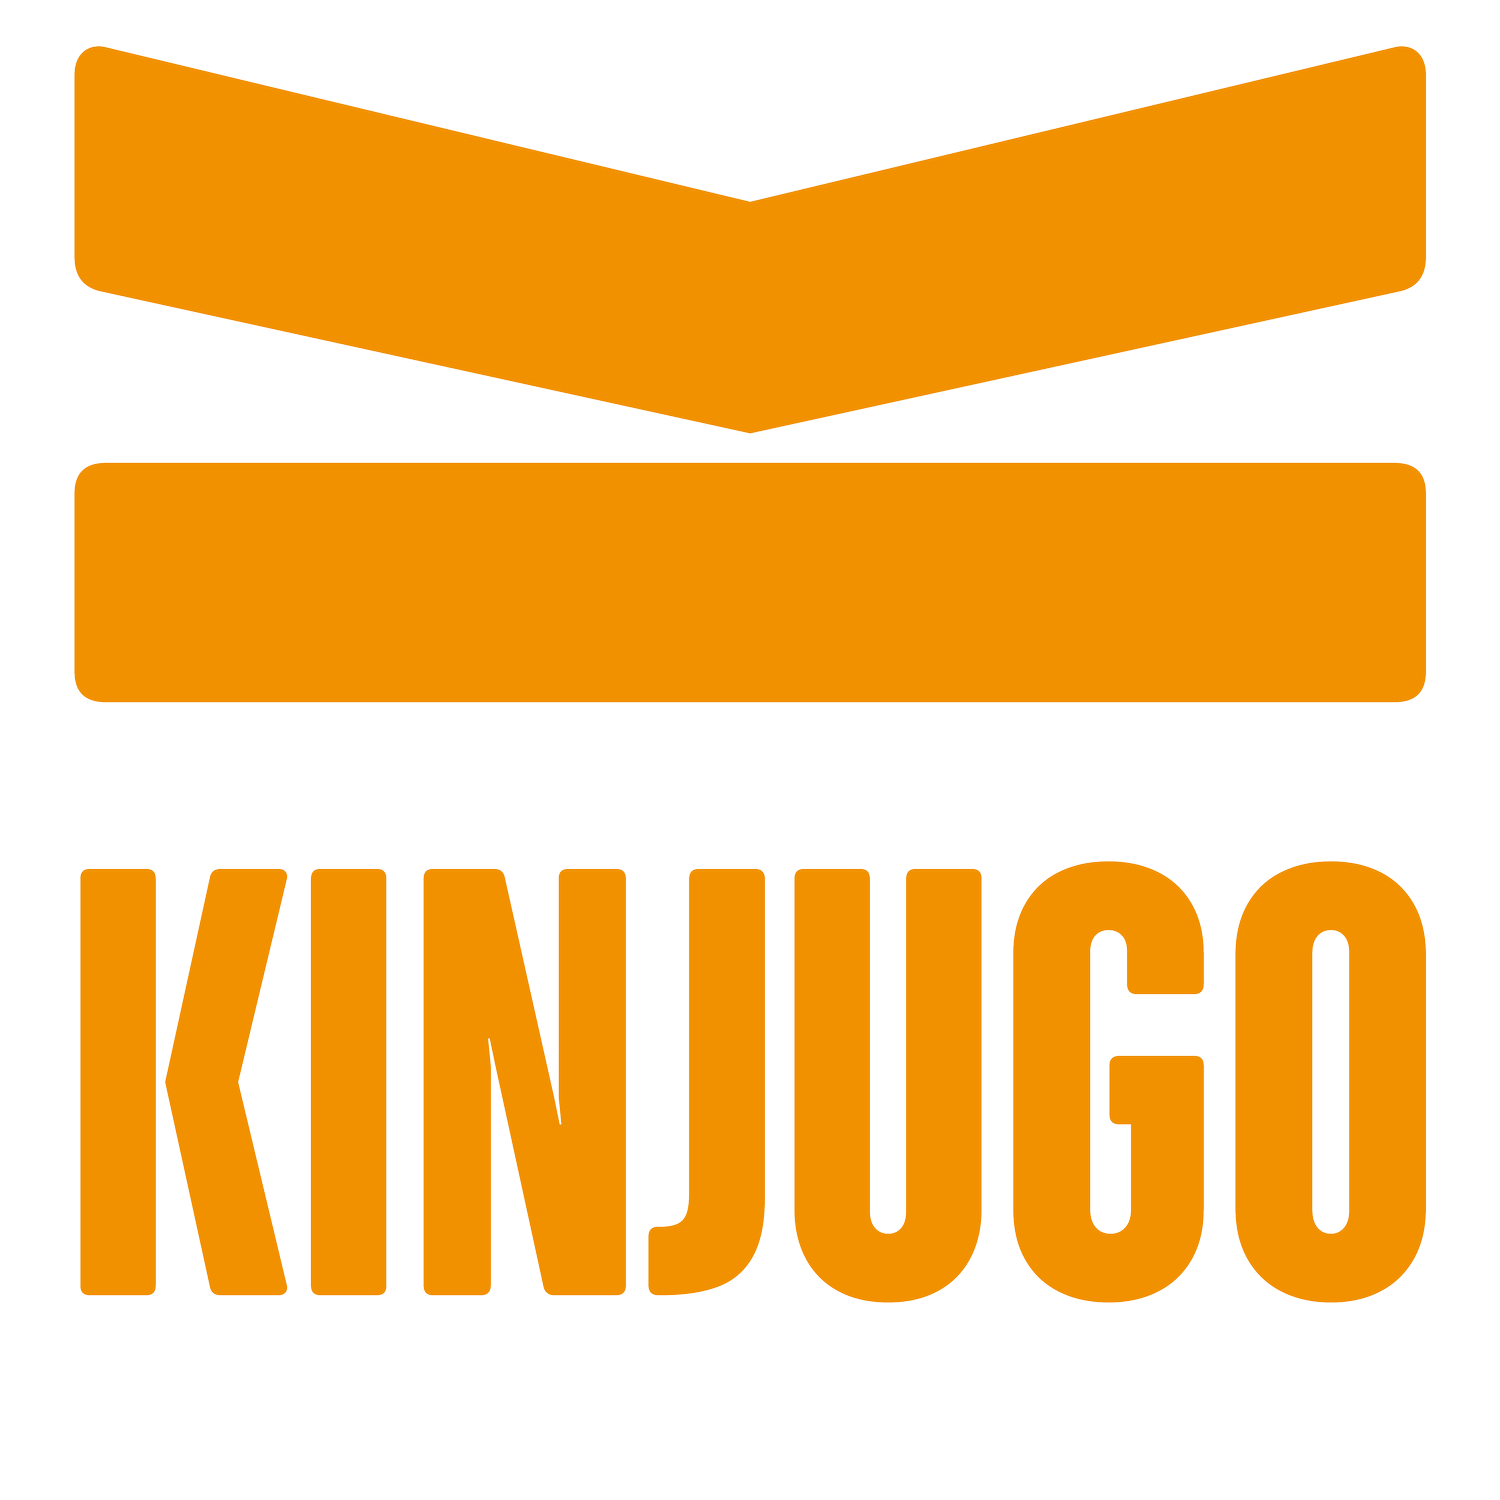 Kinjugo